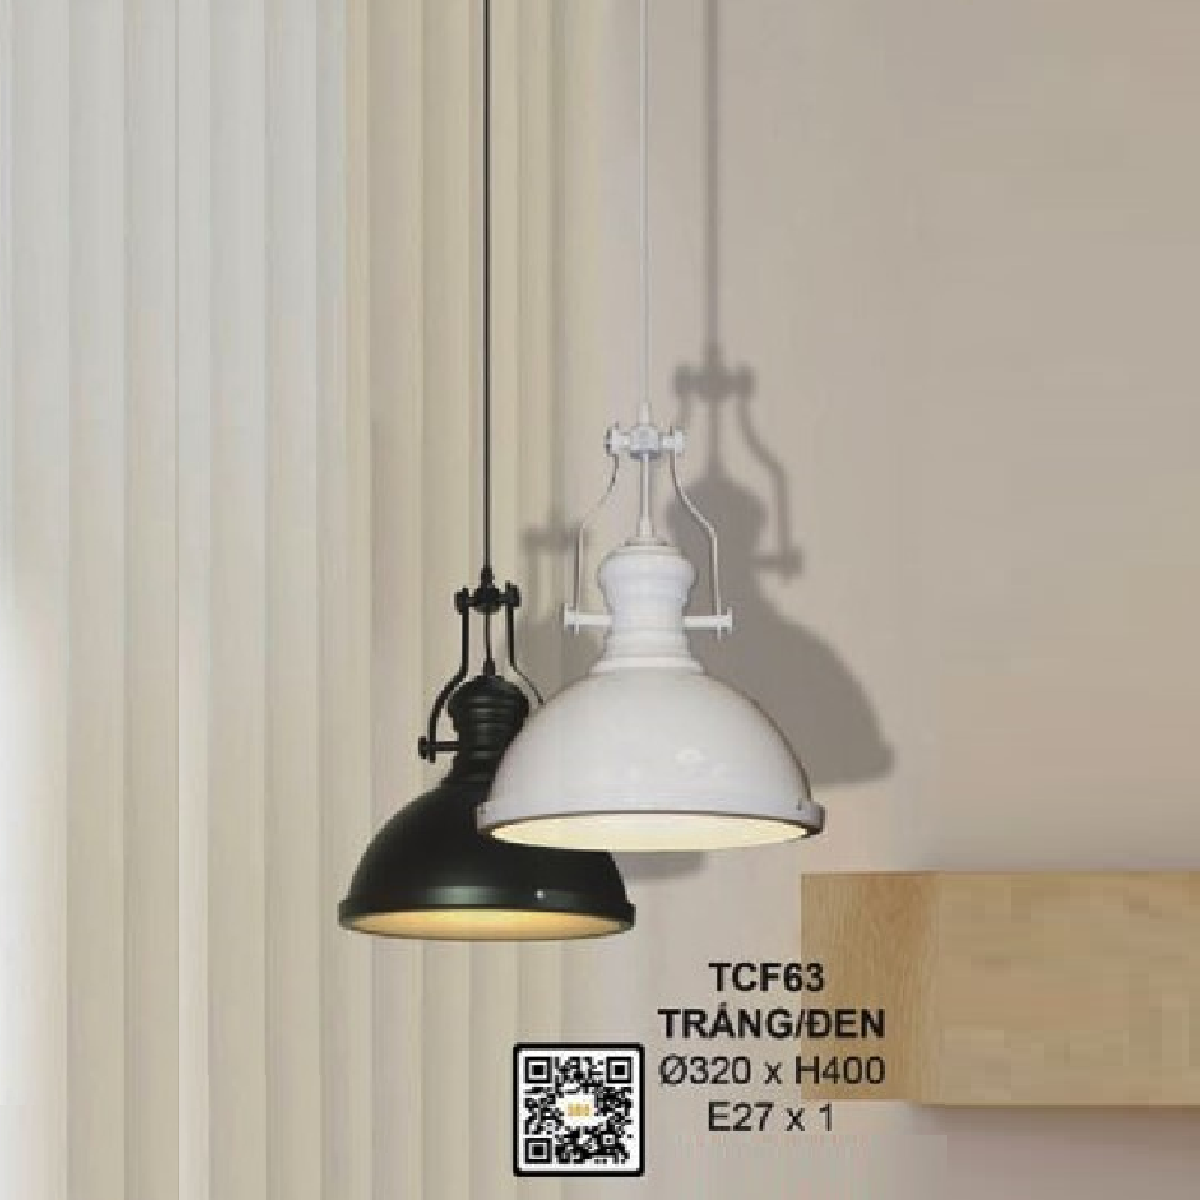 35 - TCF63: Đèn thả đơn chao Trằng/Đen - KT: Ø320mm x H400mm - Bóng đèn E27 x 1 bóng